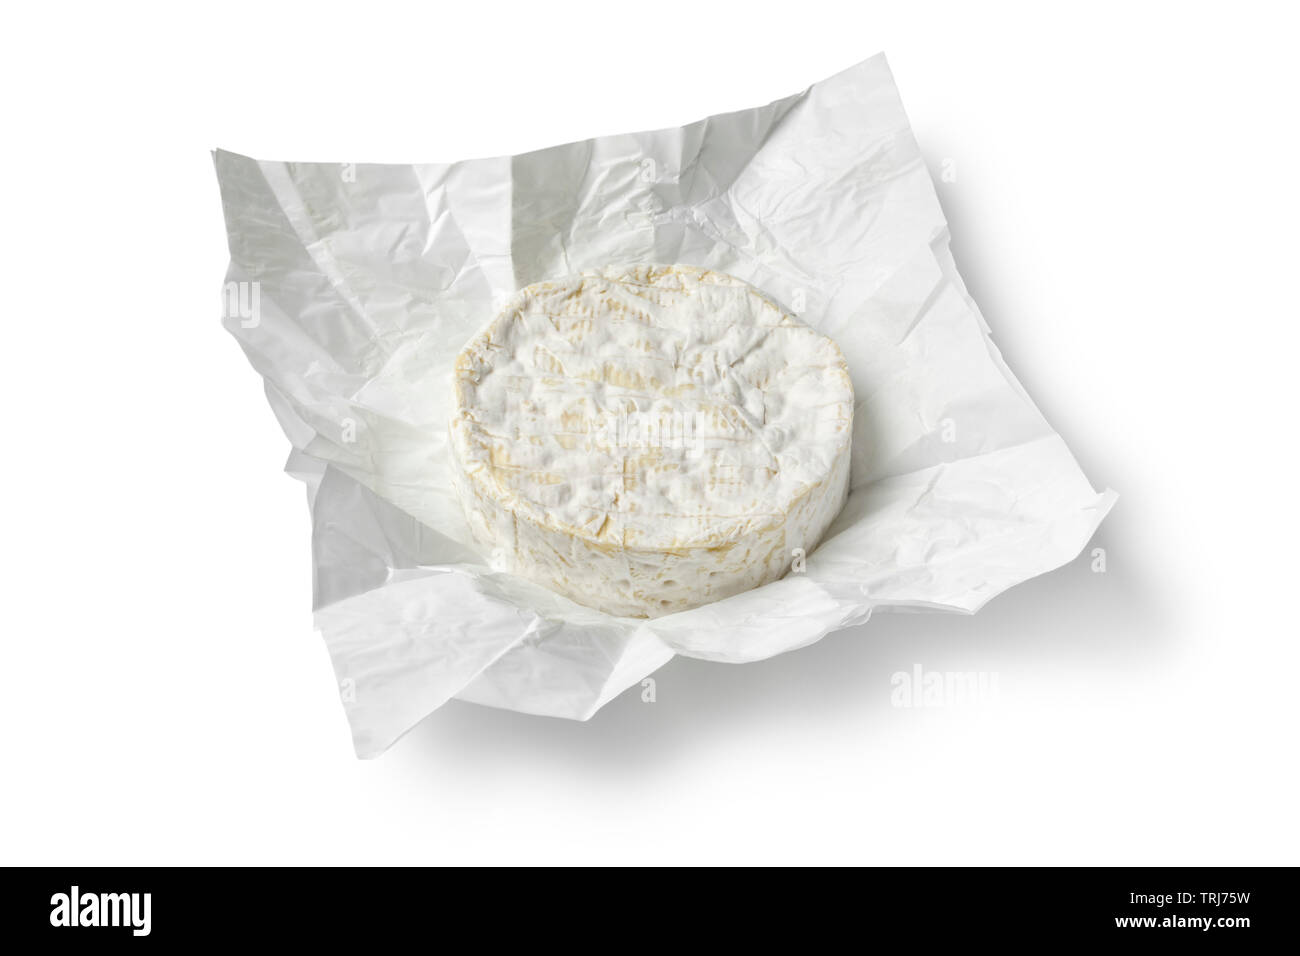 Tout unique ronde Brie cheeseat papier emballage isolé sur fond blanc Banque D'Images